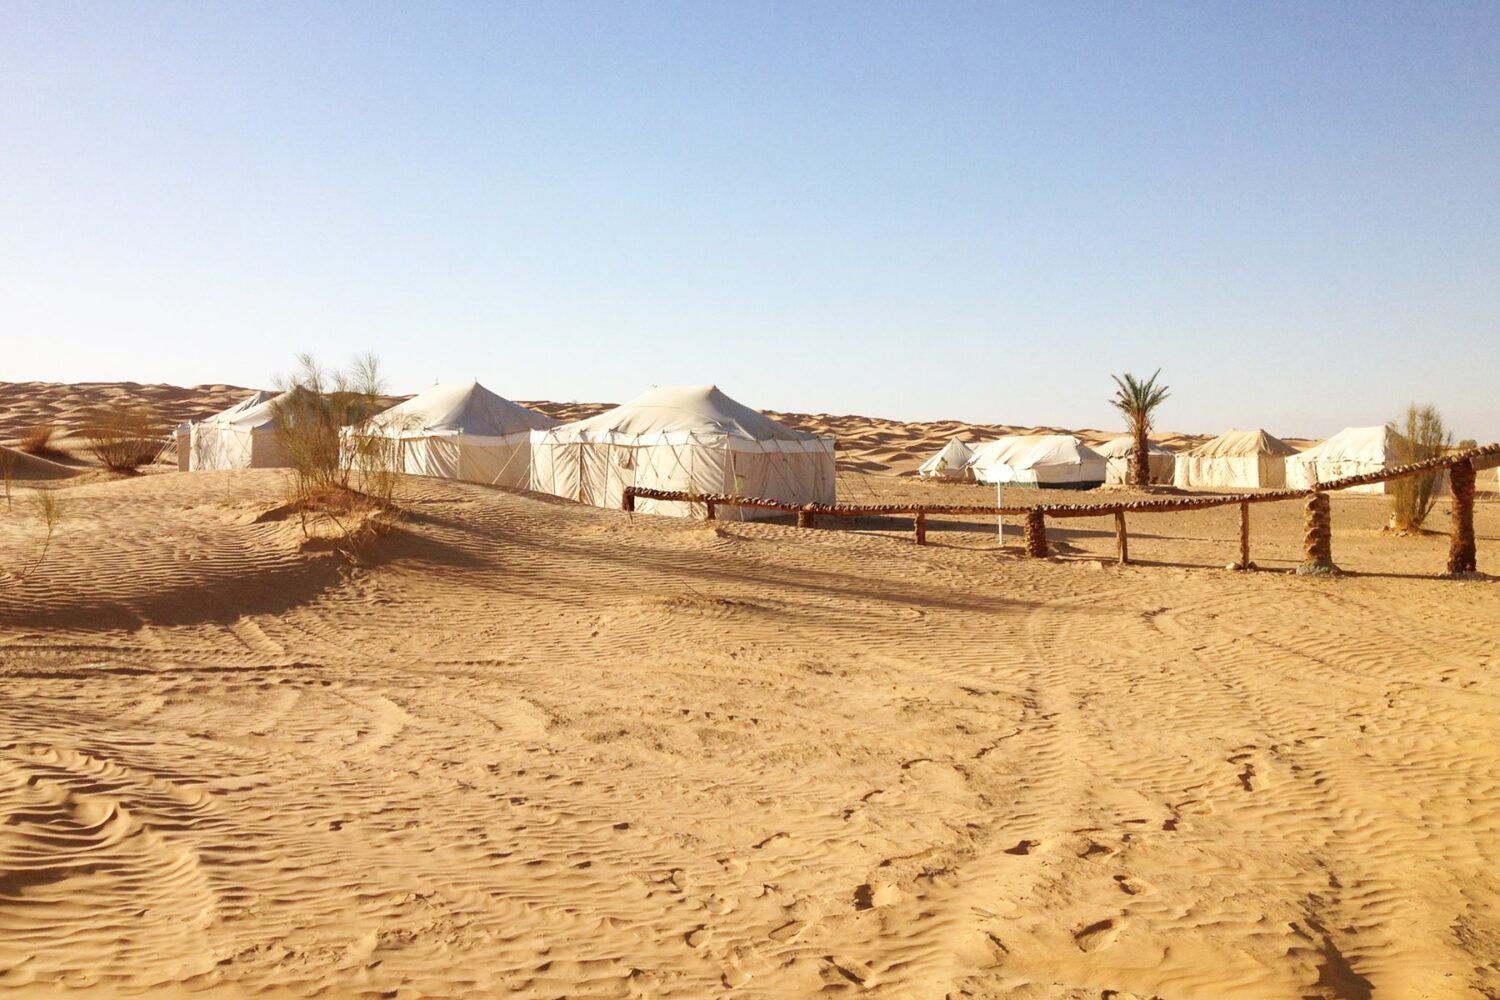 Zmela Saharan Camp: